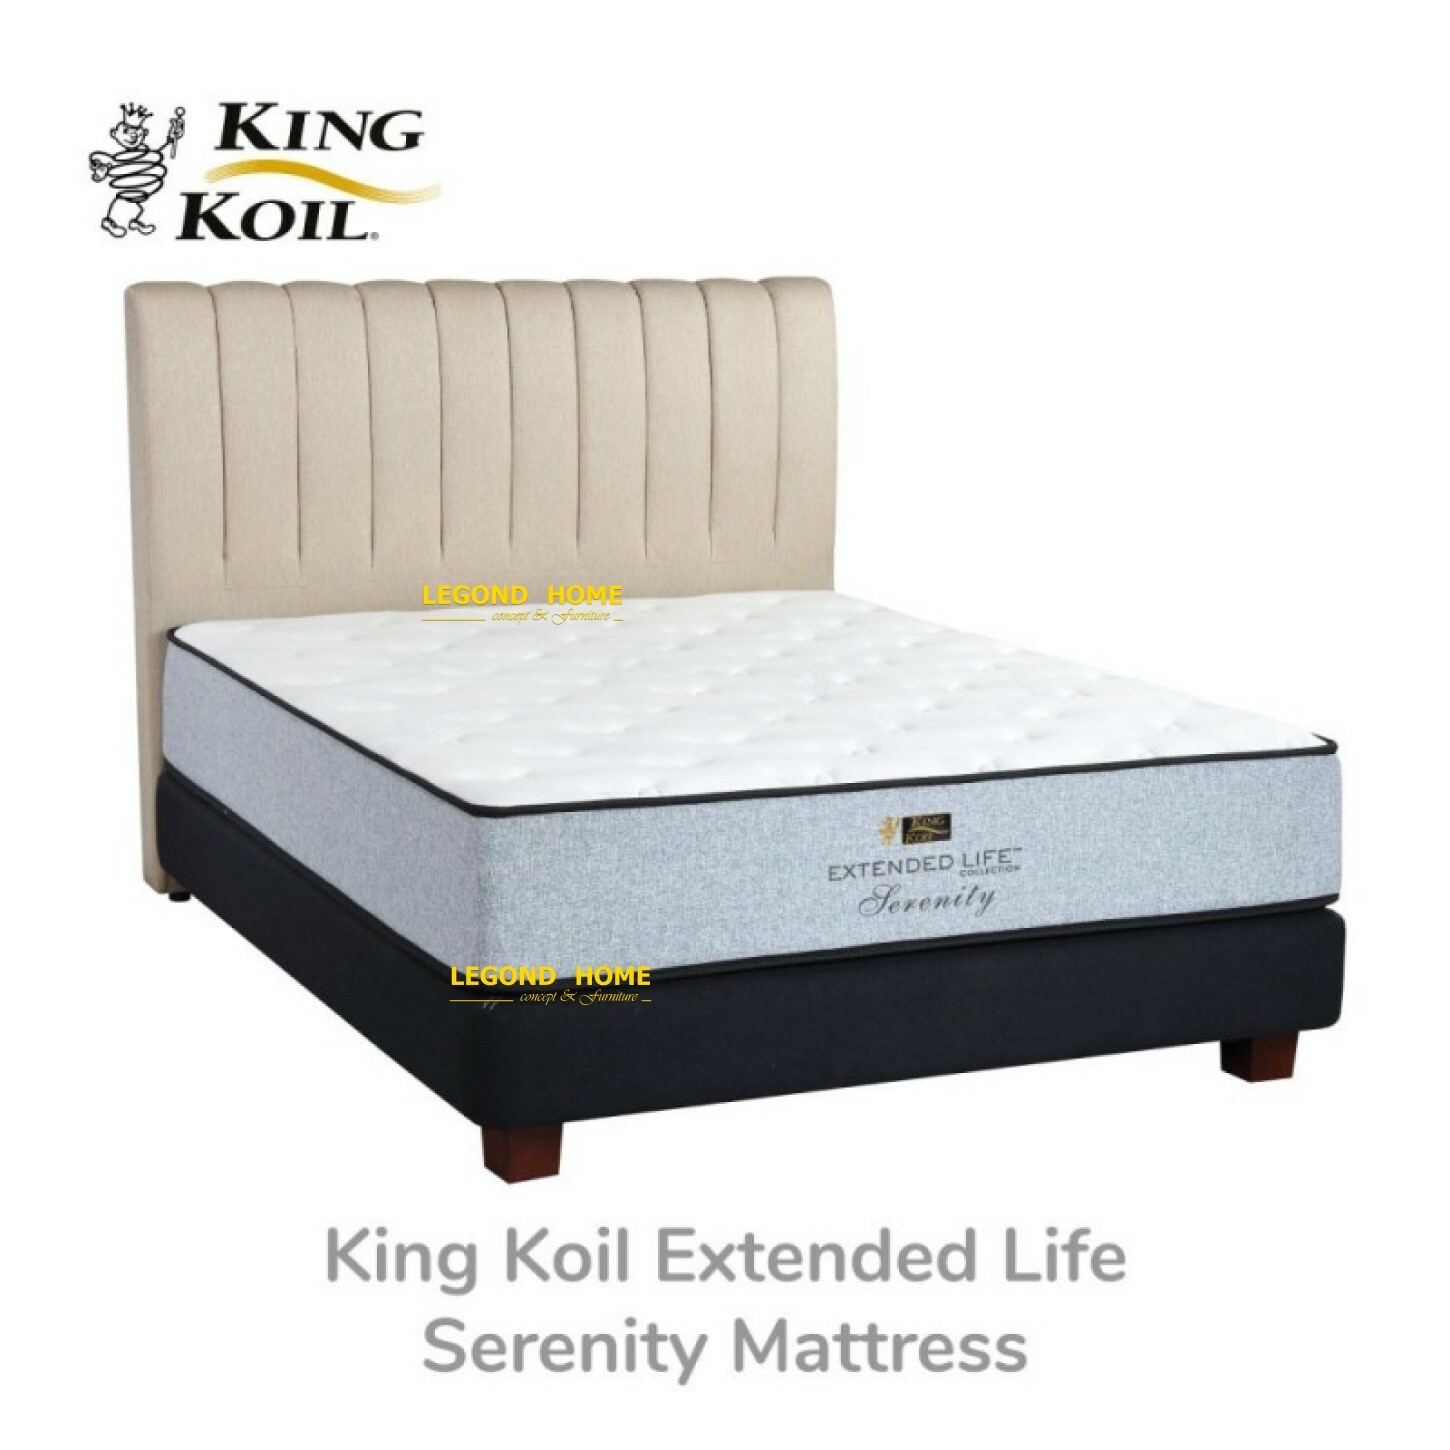 King-Koil-Extended-Life-Serenity-Mattress.jpg